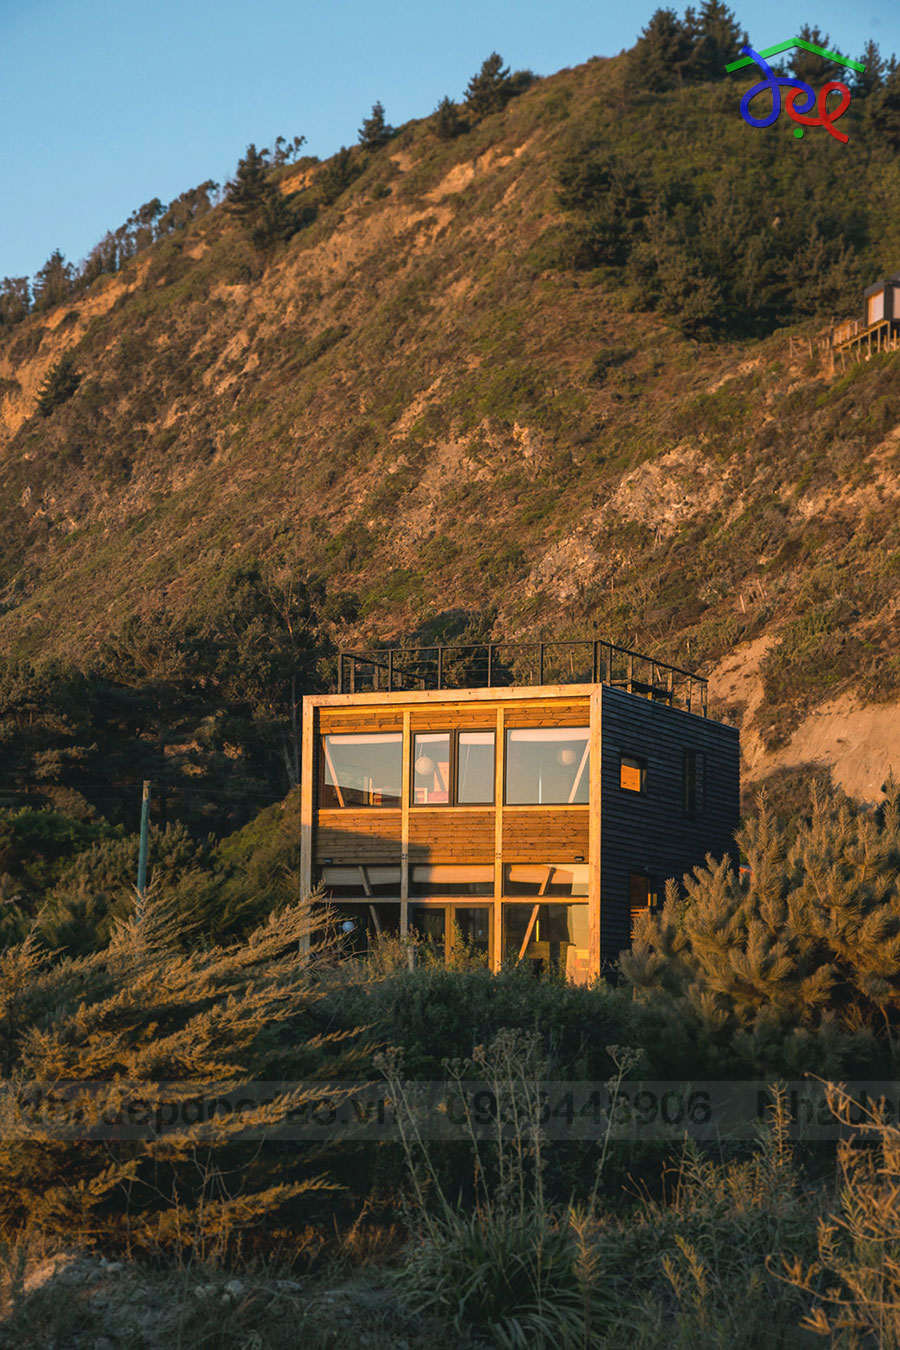 Thiết kế nhà nghỉ 2 tầng 1 mái ở Chile